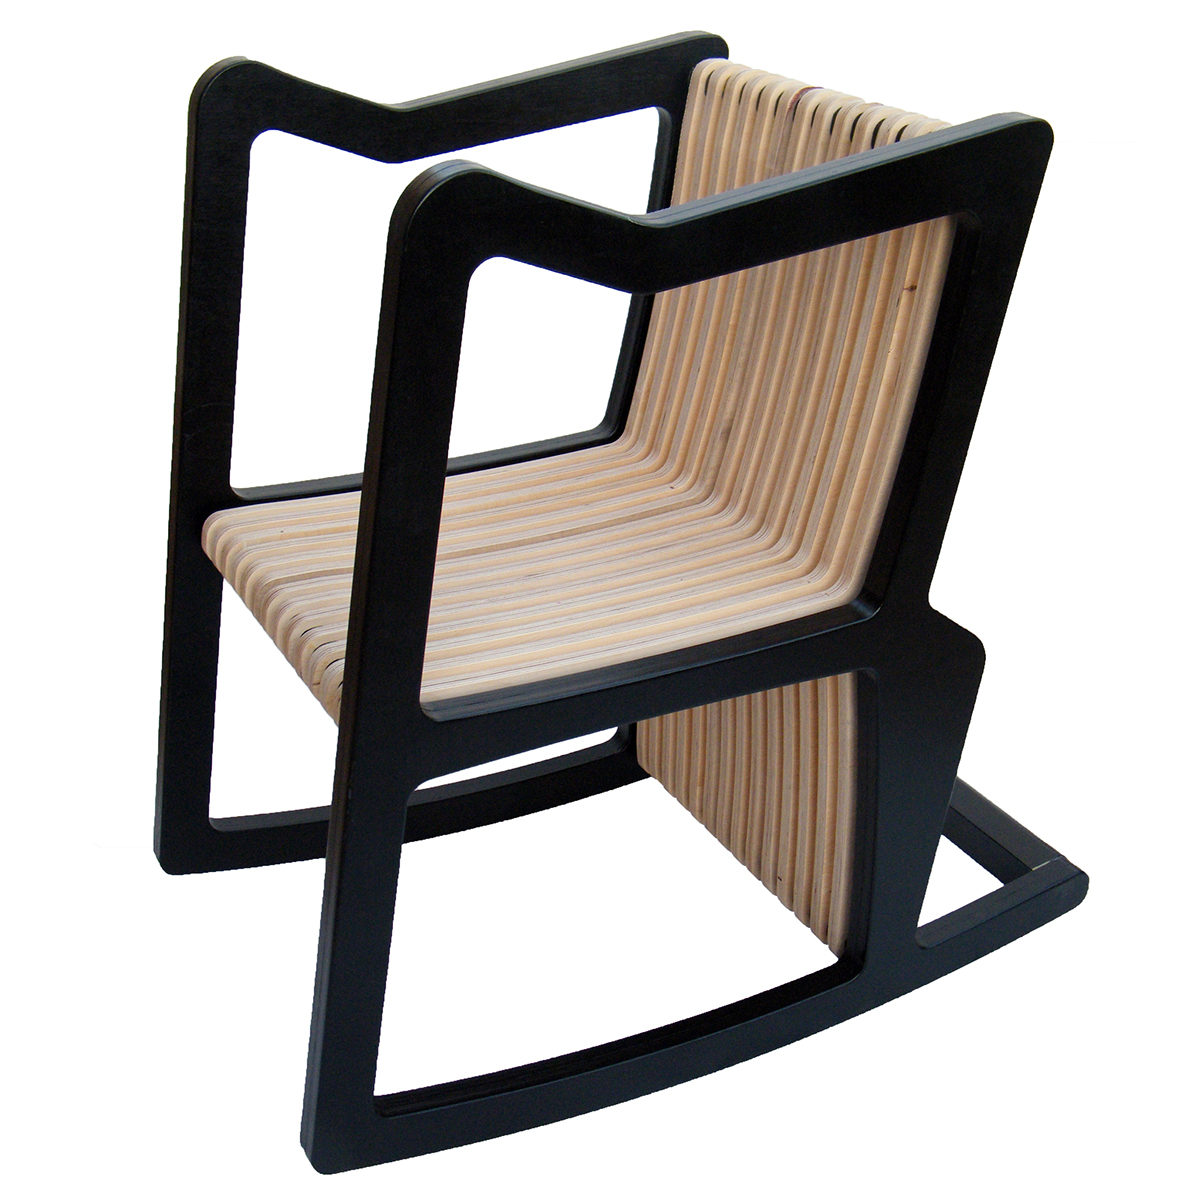 rocking chair chair beach chair bench dynamic chair  industrial design chair furniture chair design 4 in 1 modular design